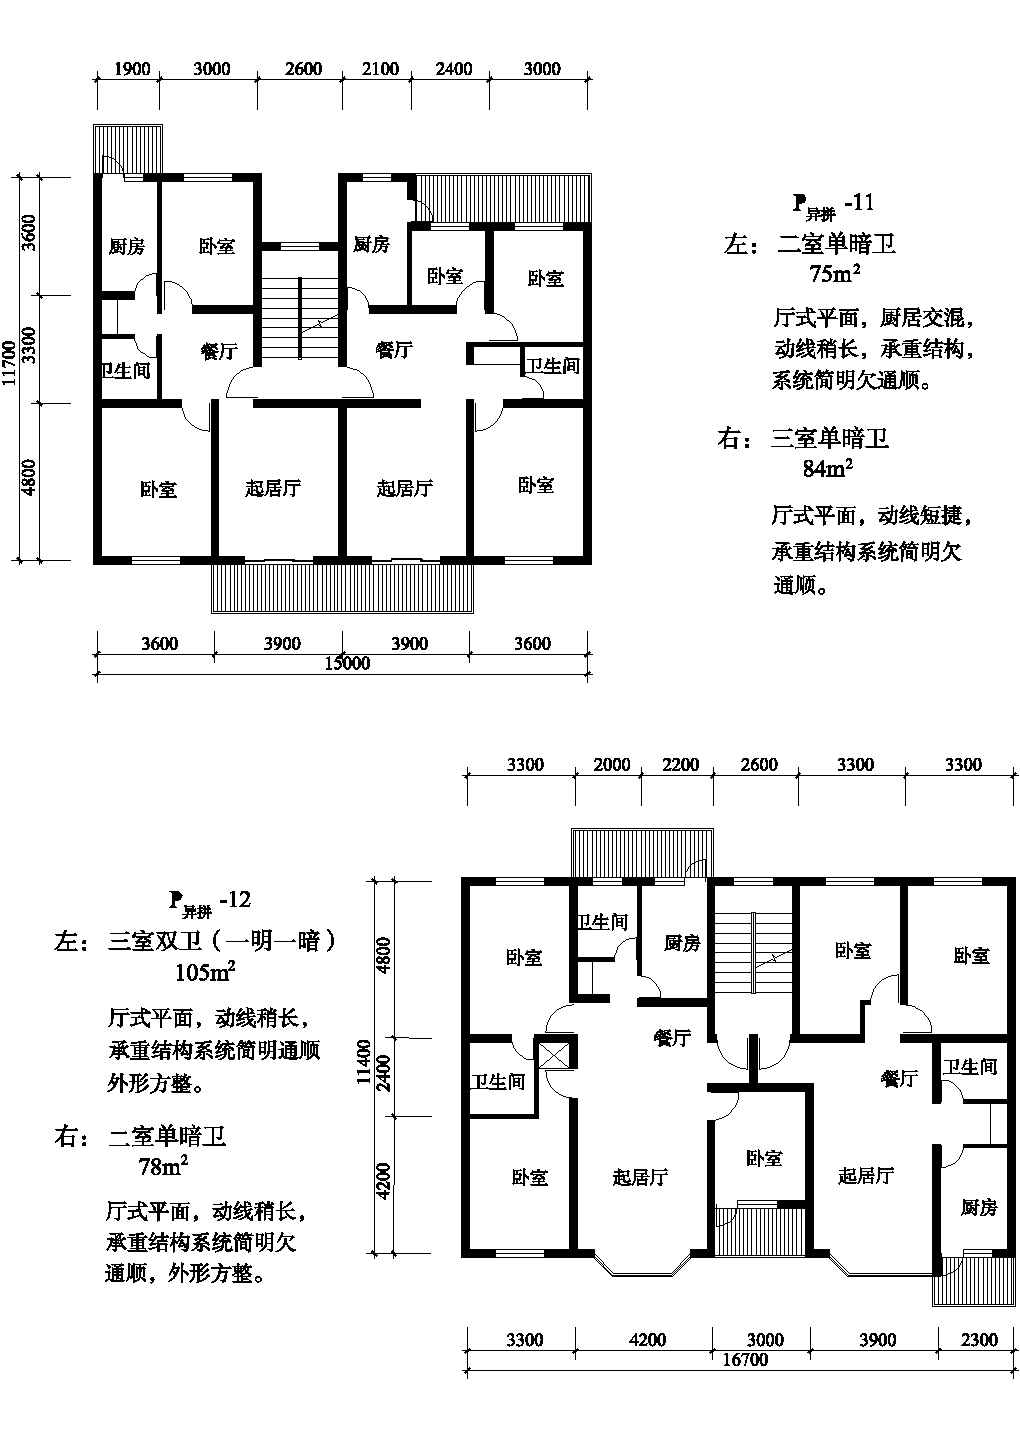 三室/二室异拼式单元式住宅平面图纸